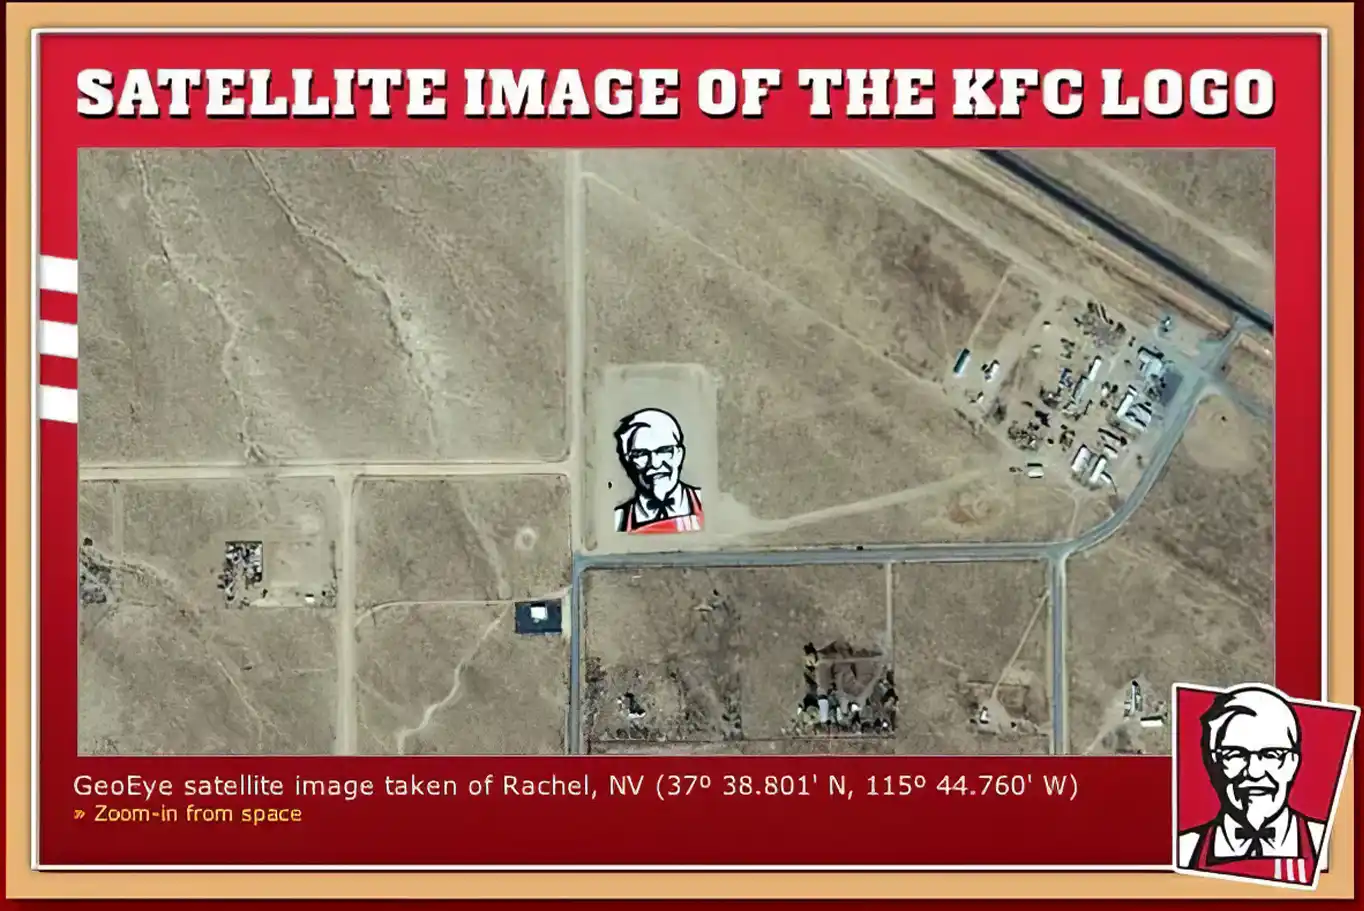 "Il logo visibile dallo spazio" di Kentucky Fried Chicken - KFC è un esempio di marketing audace e innovativo che ha utilizzato un geoglifo 